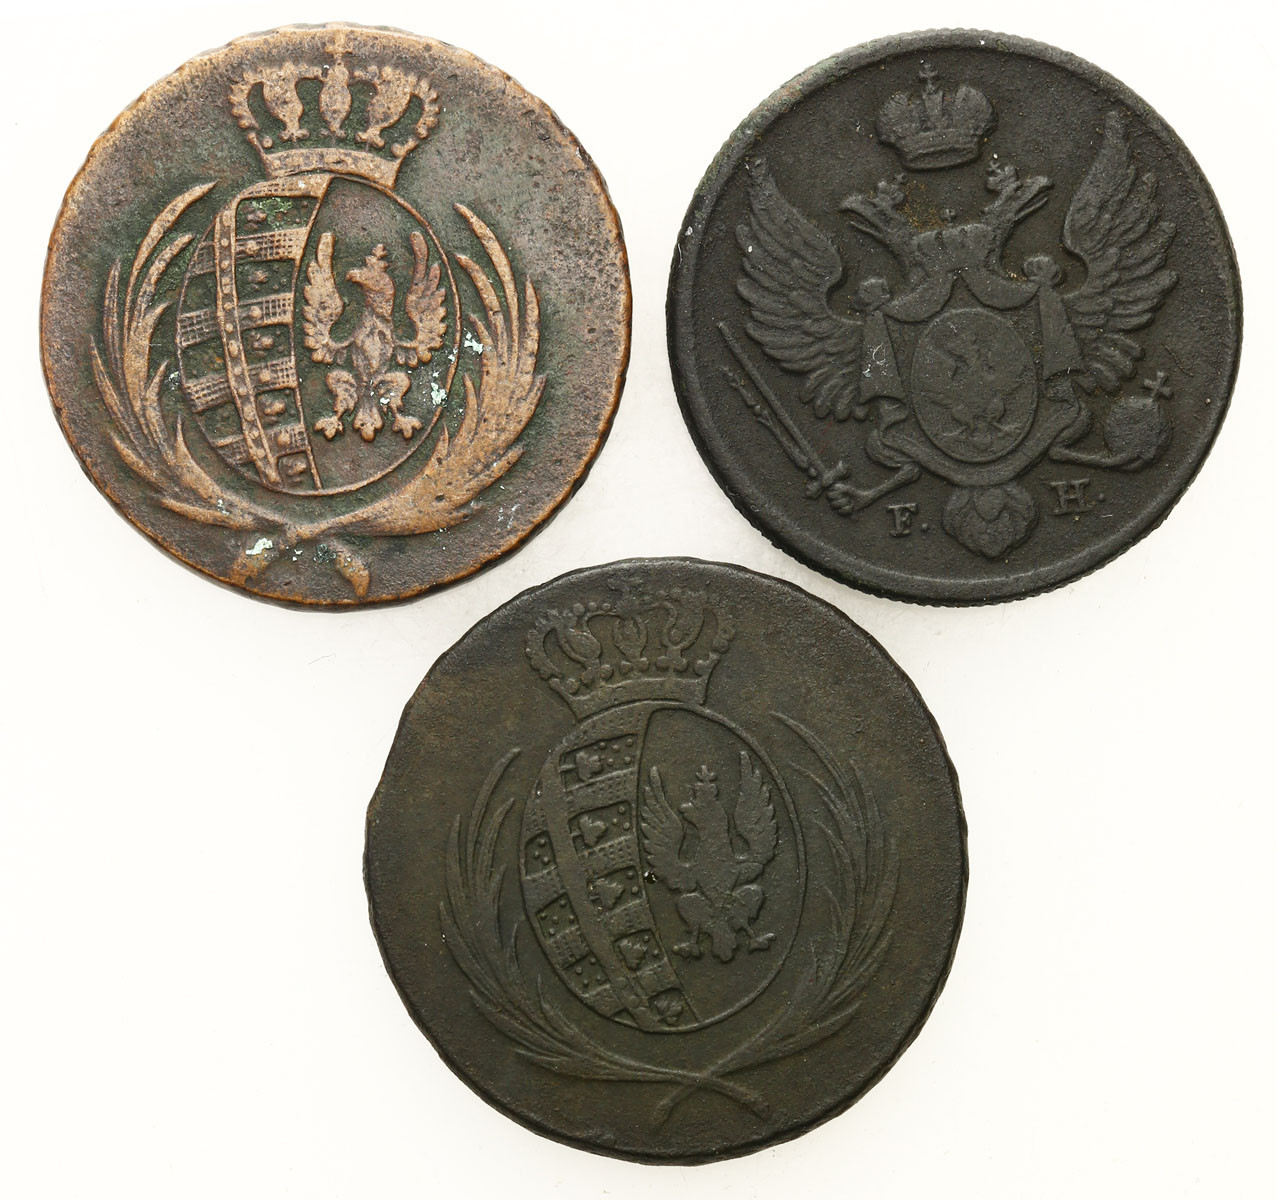 Księstwo Warszawskie. 3 grosze (trojak) 1811 IS, 1812 IB, 1829 IB, Warszawa, zestaw 3 monet